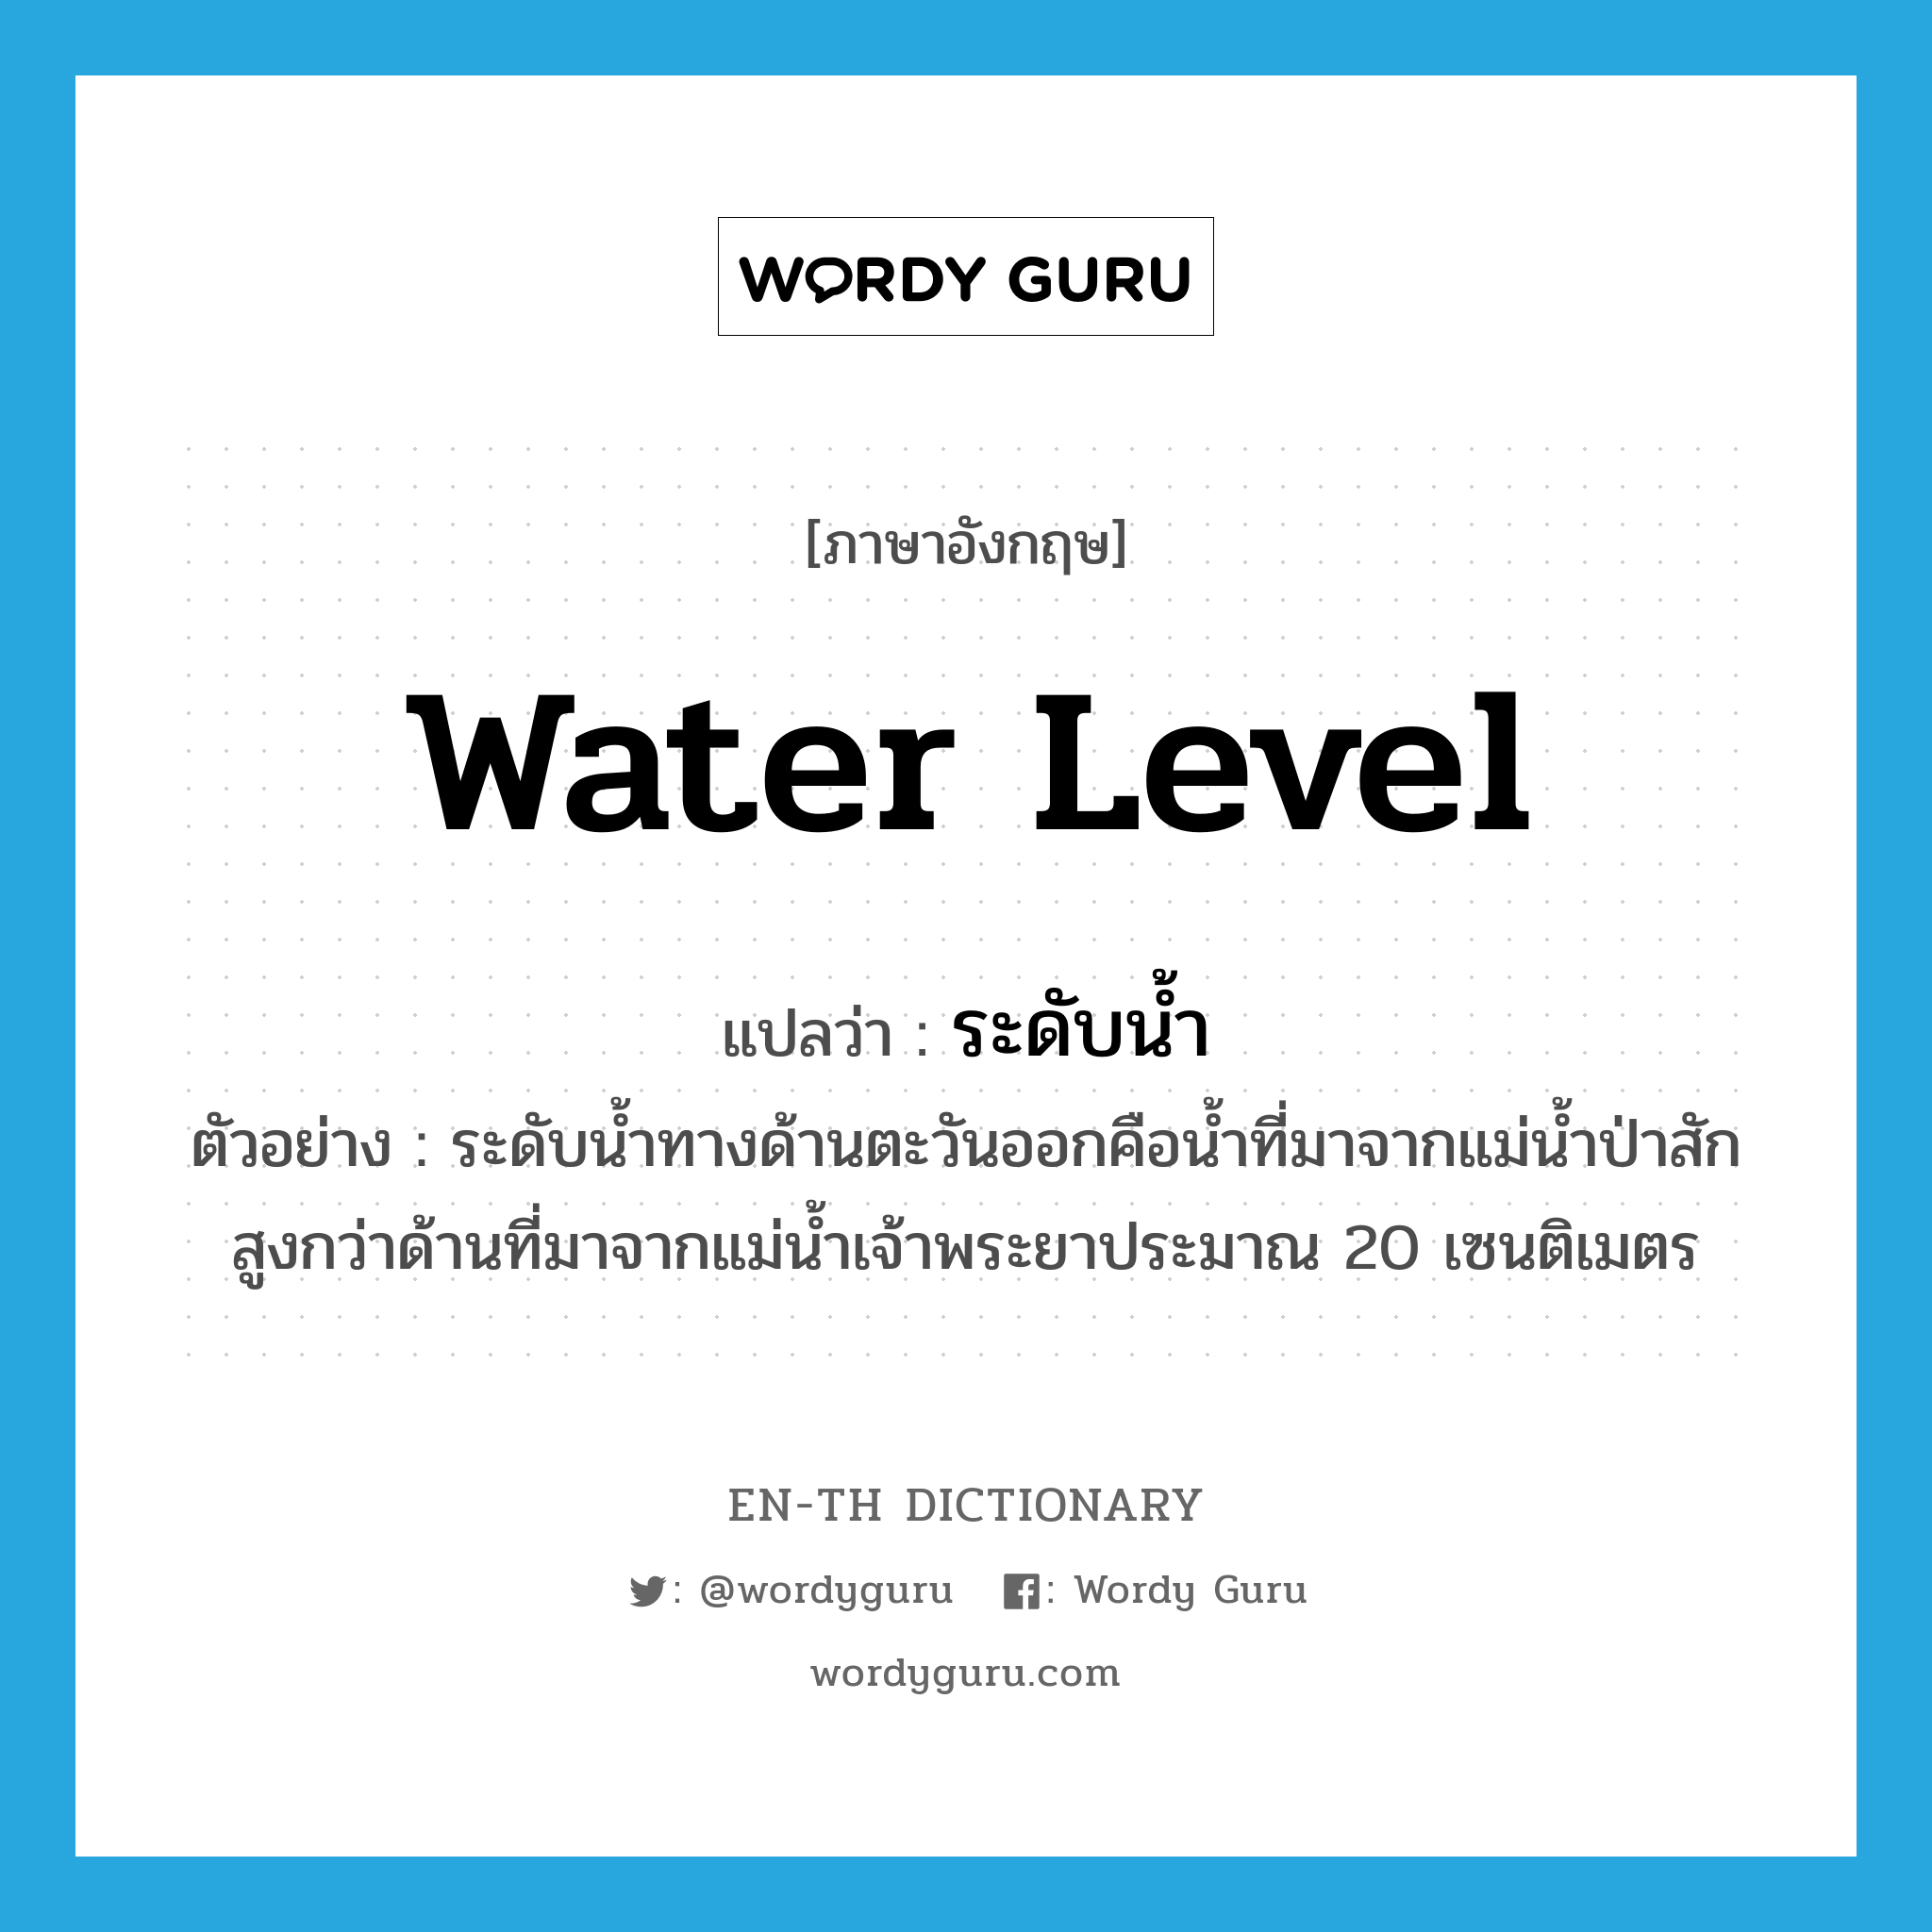 ระดับน้ำ ภาษาอังกฤษ?, คำศัพท์ภาษาอังกฤษ ระดับน้ำ แปลว่า water level ประเภท N ตัวอย่าง ระดับน้ำทางด้านตะวันออกคือน้ำที่มาจากแม่น้ำป่าสัก สูงกว่าด้านที่มาจากแม่น้ำเจ้าพระยาประมาณ 20 เซนติเมตร หมวด N